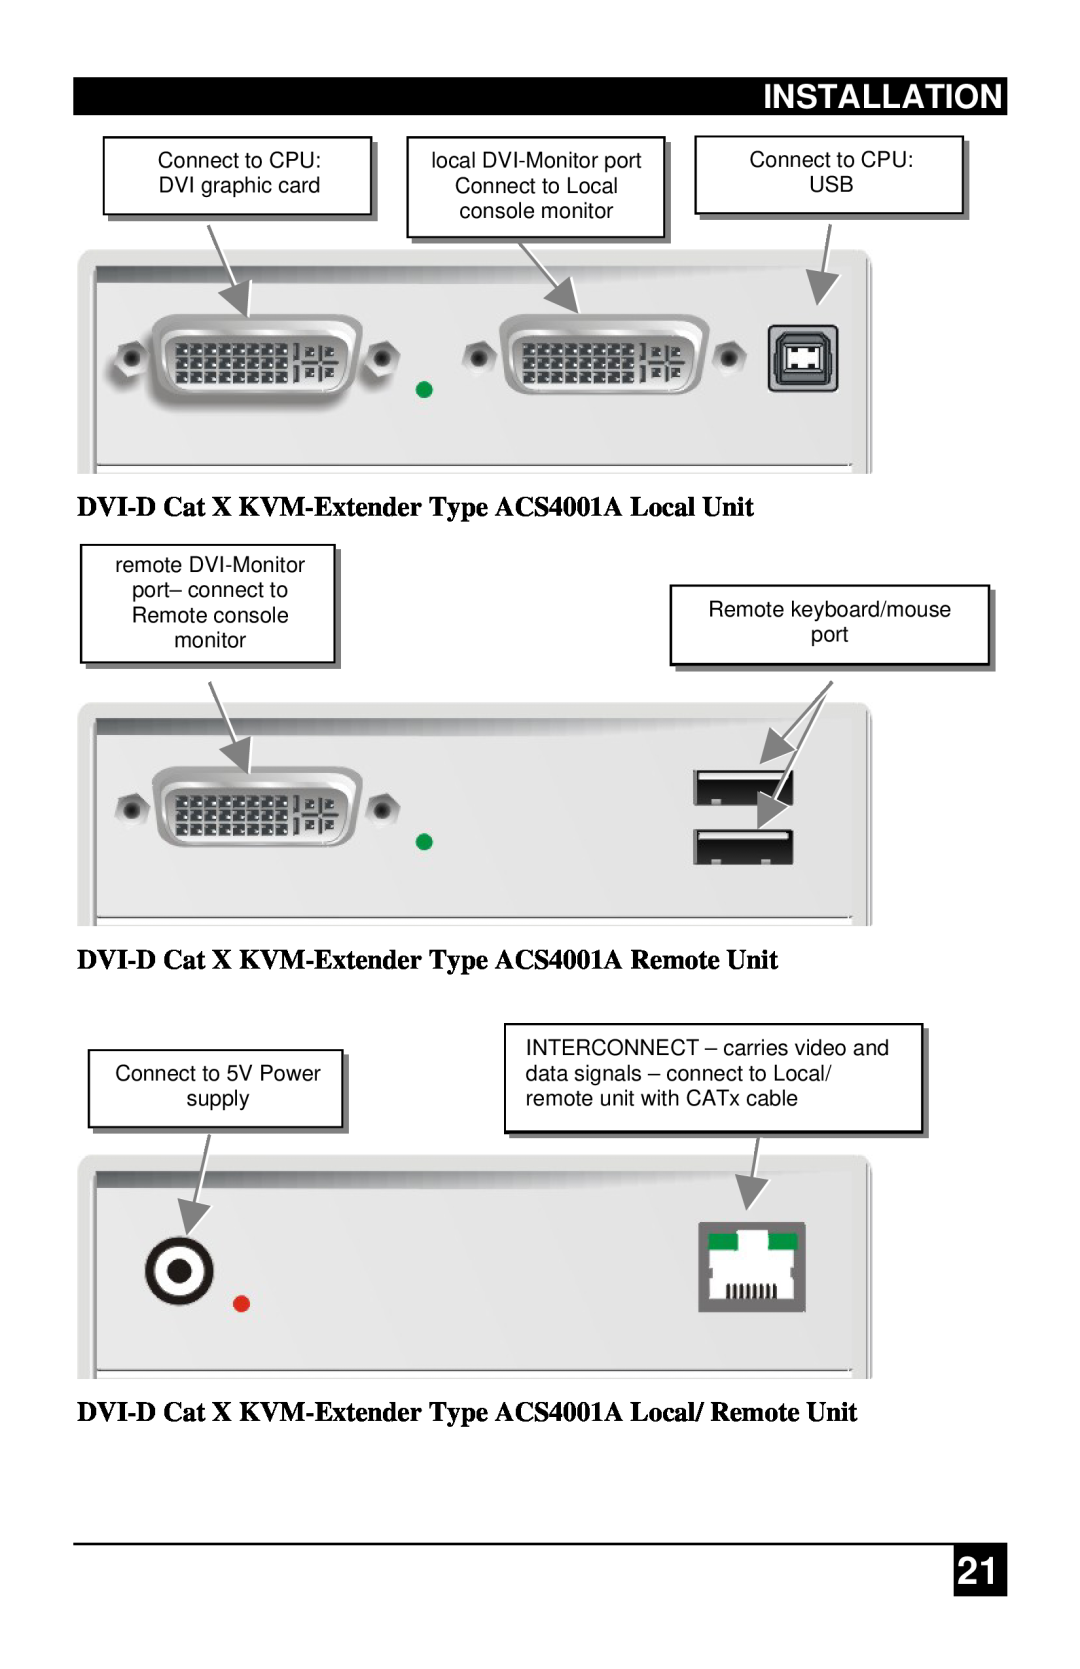 Black Box ACS4201A, ACS1009A manual Installation, DVI-DCat X KVM-ExtenderType ACS4001A Local Unit 